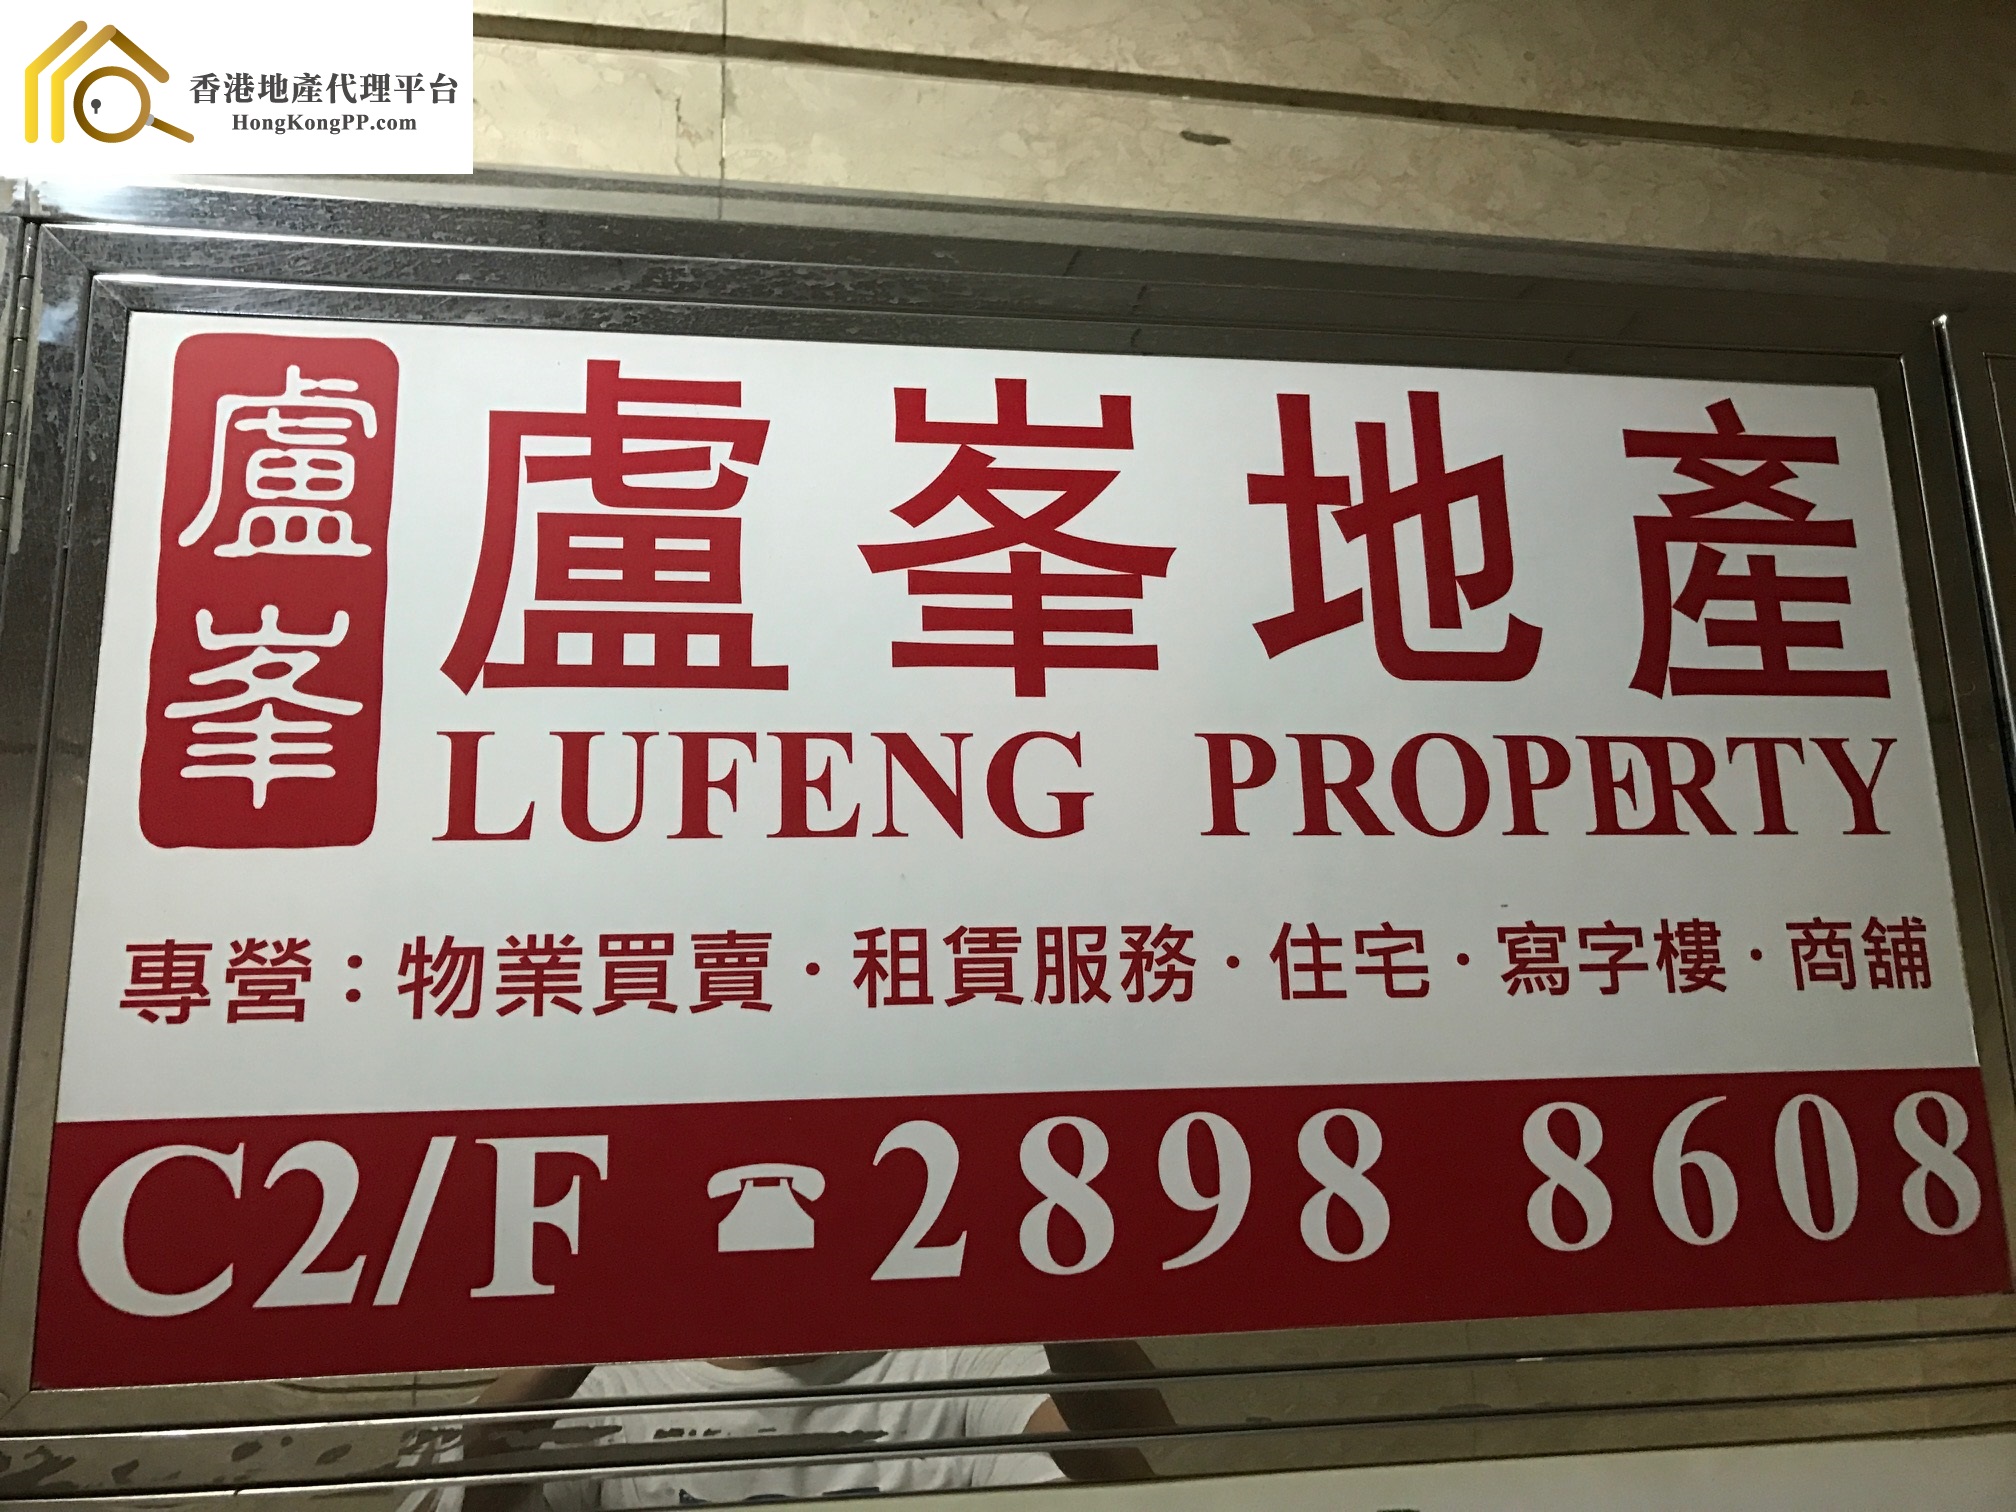 住宅地產代理: 盧峯地產 Lufeng Property